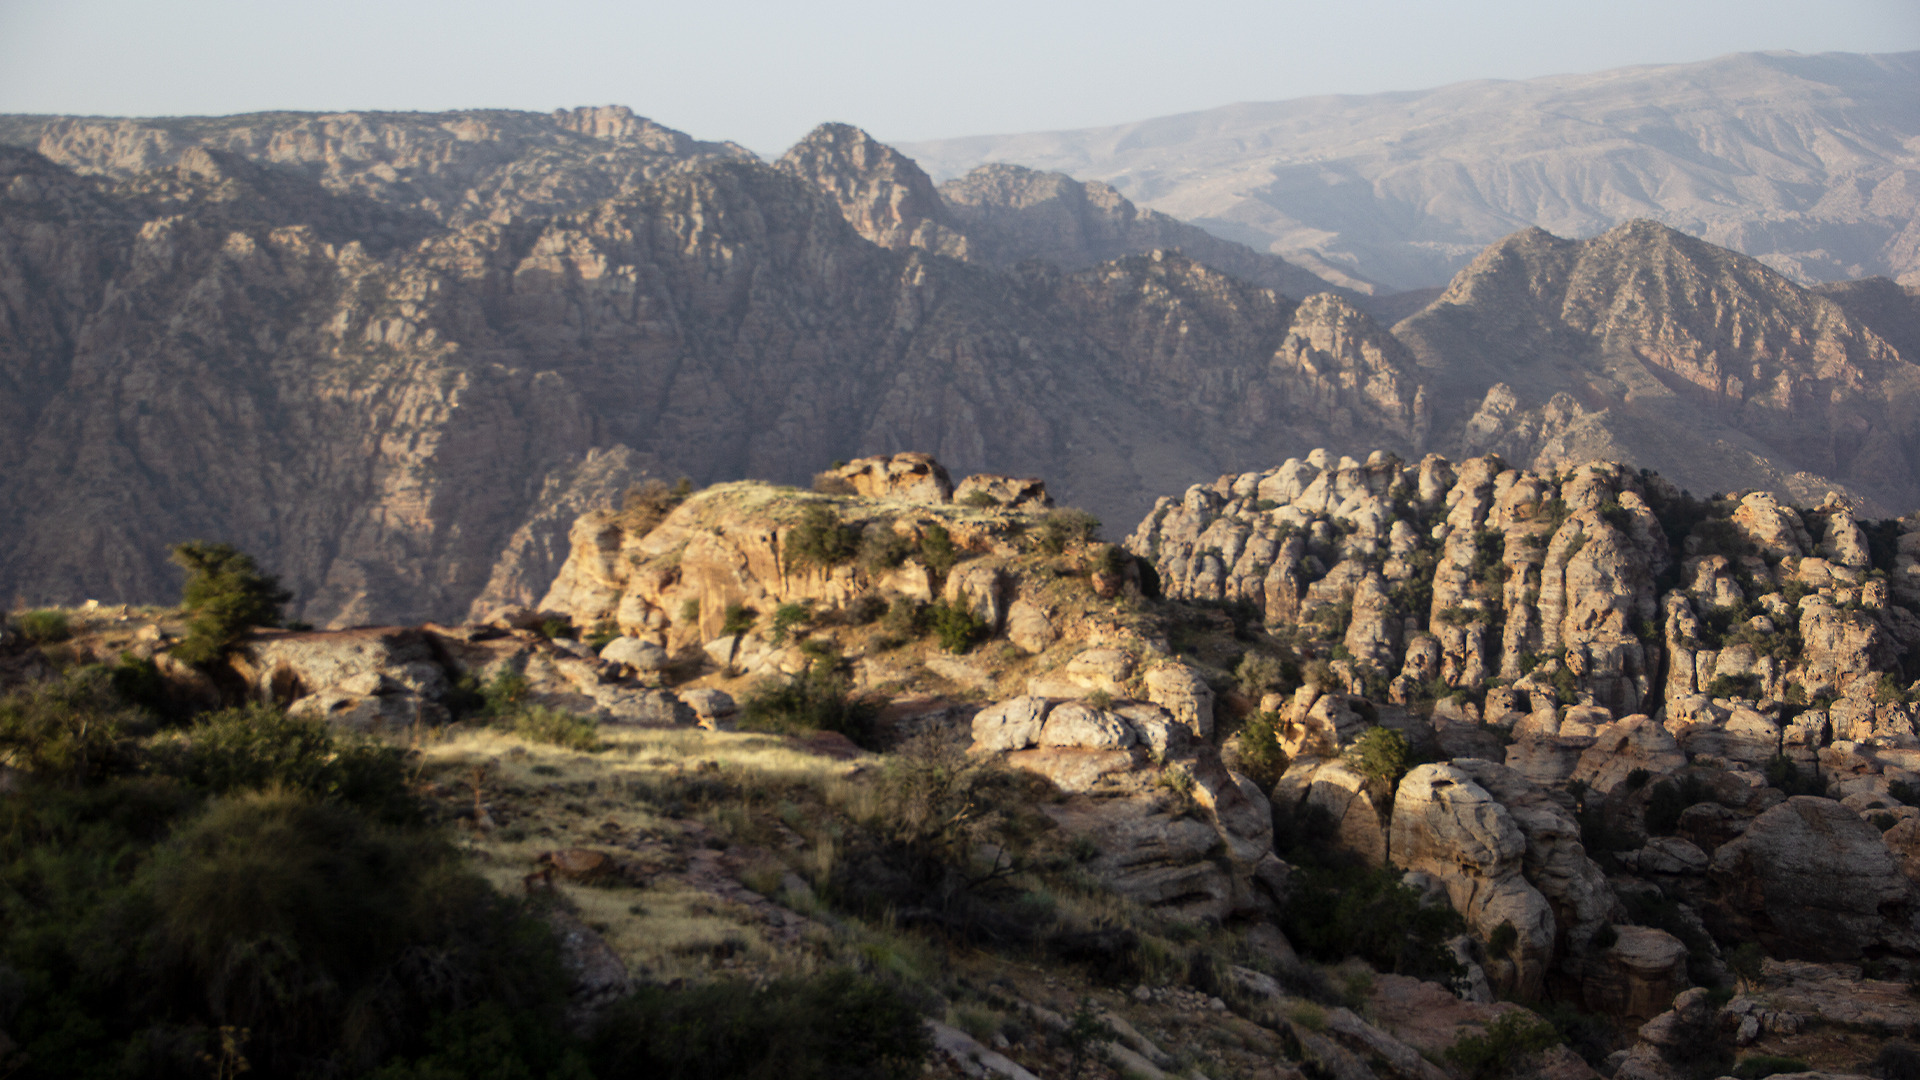 Wildest Middle East - E3 - Jordan: Nature's Furnace